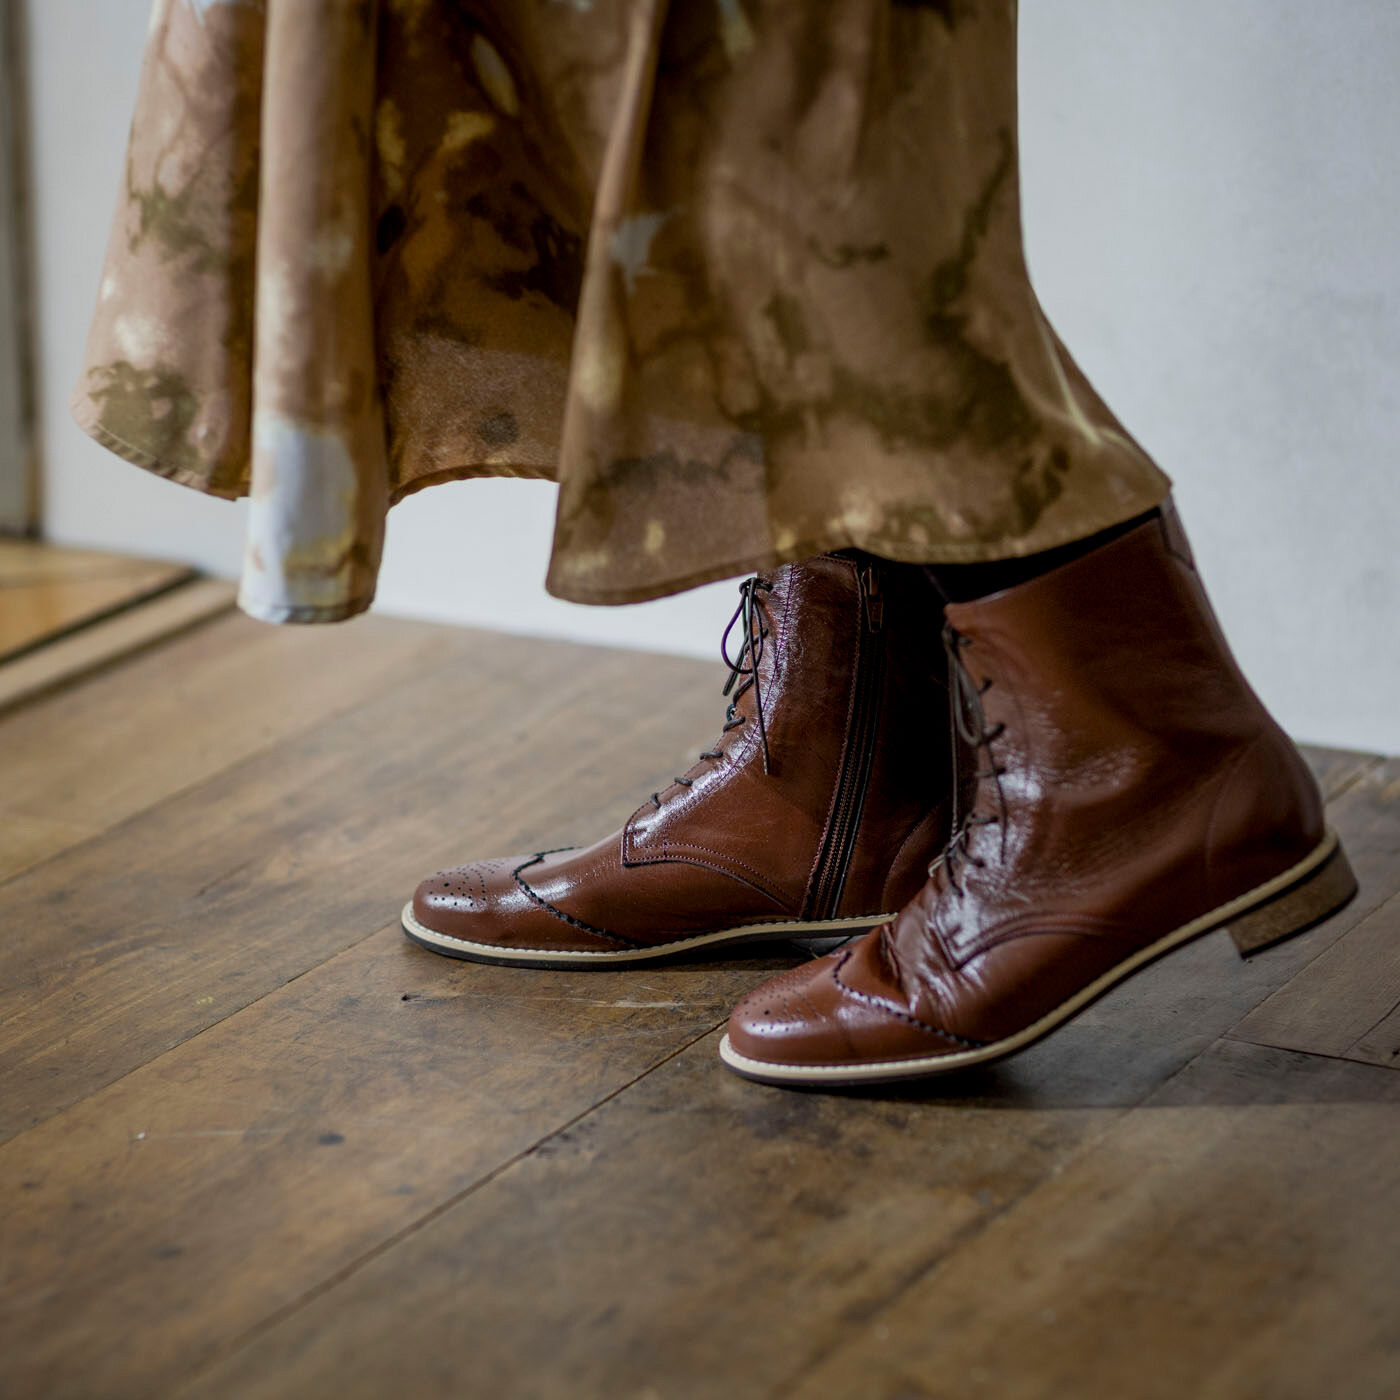 ＆Stories|長田の靴職人が作った　職人本革のウィングチップブーツ〈レッドブラウン〉|足首が隠れるミディアム丈で、パンツにもスカートにもよく合います。